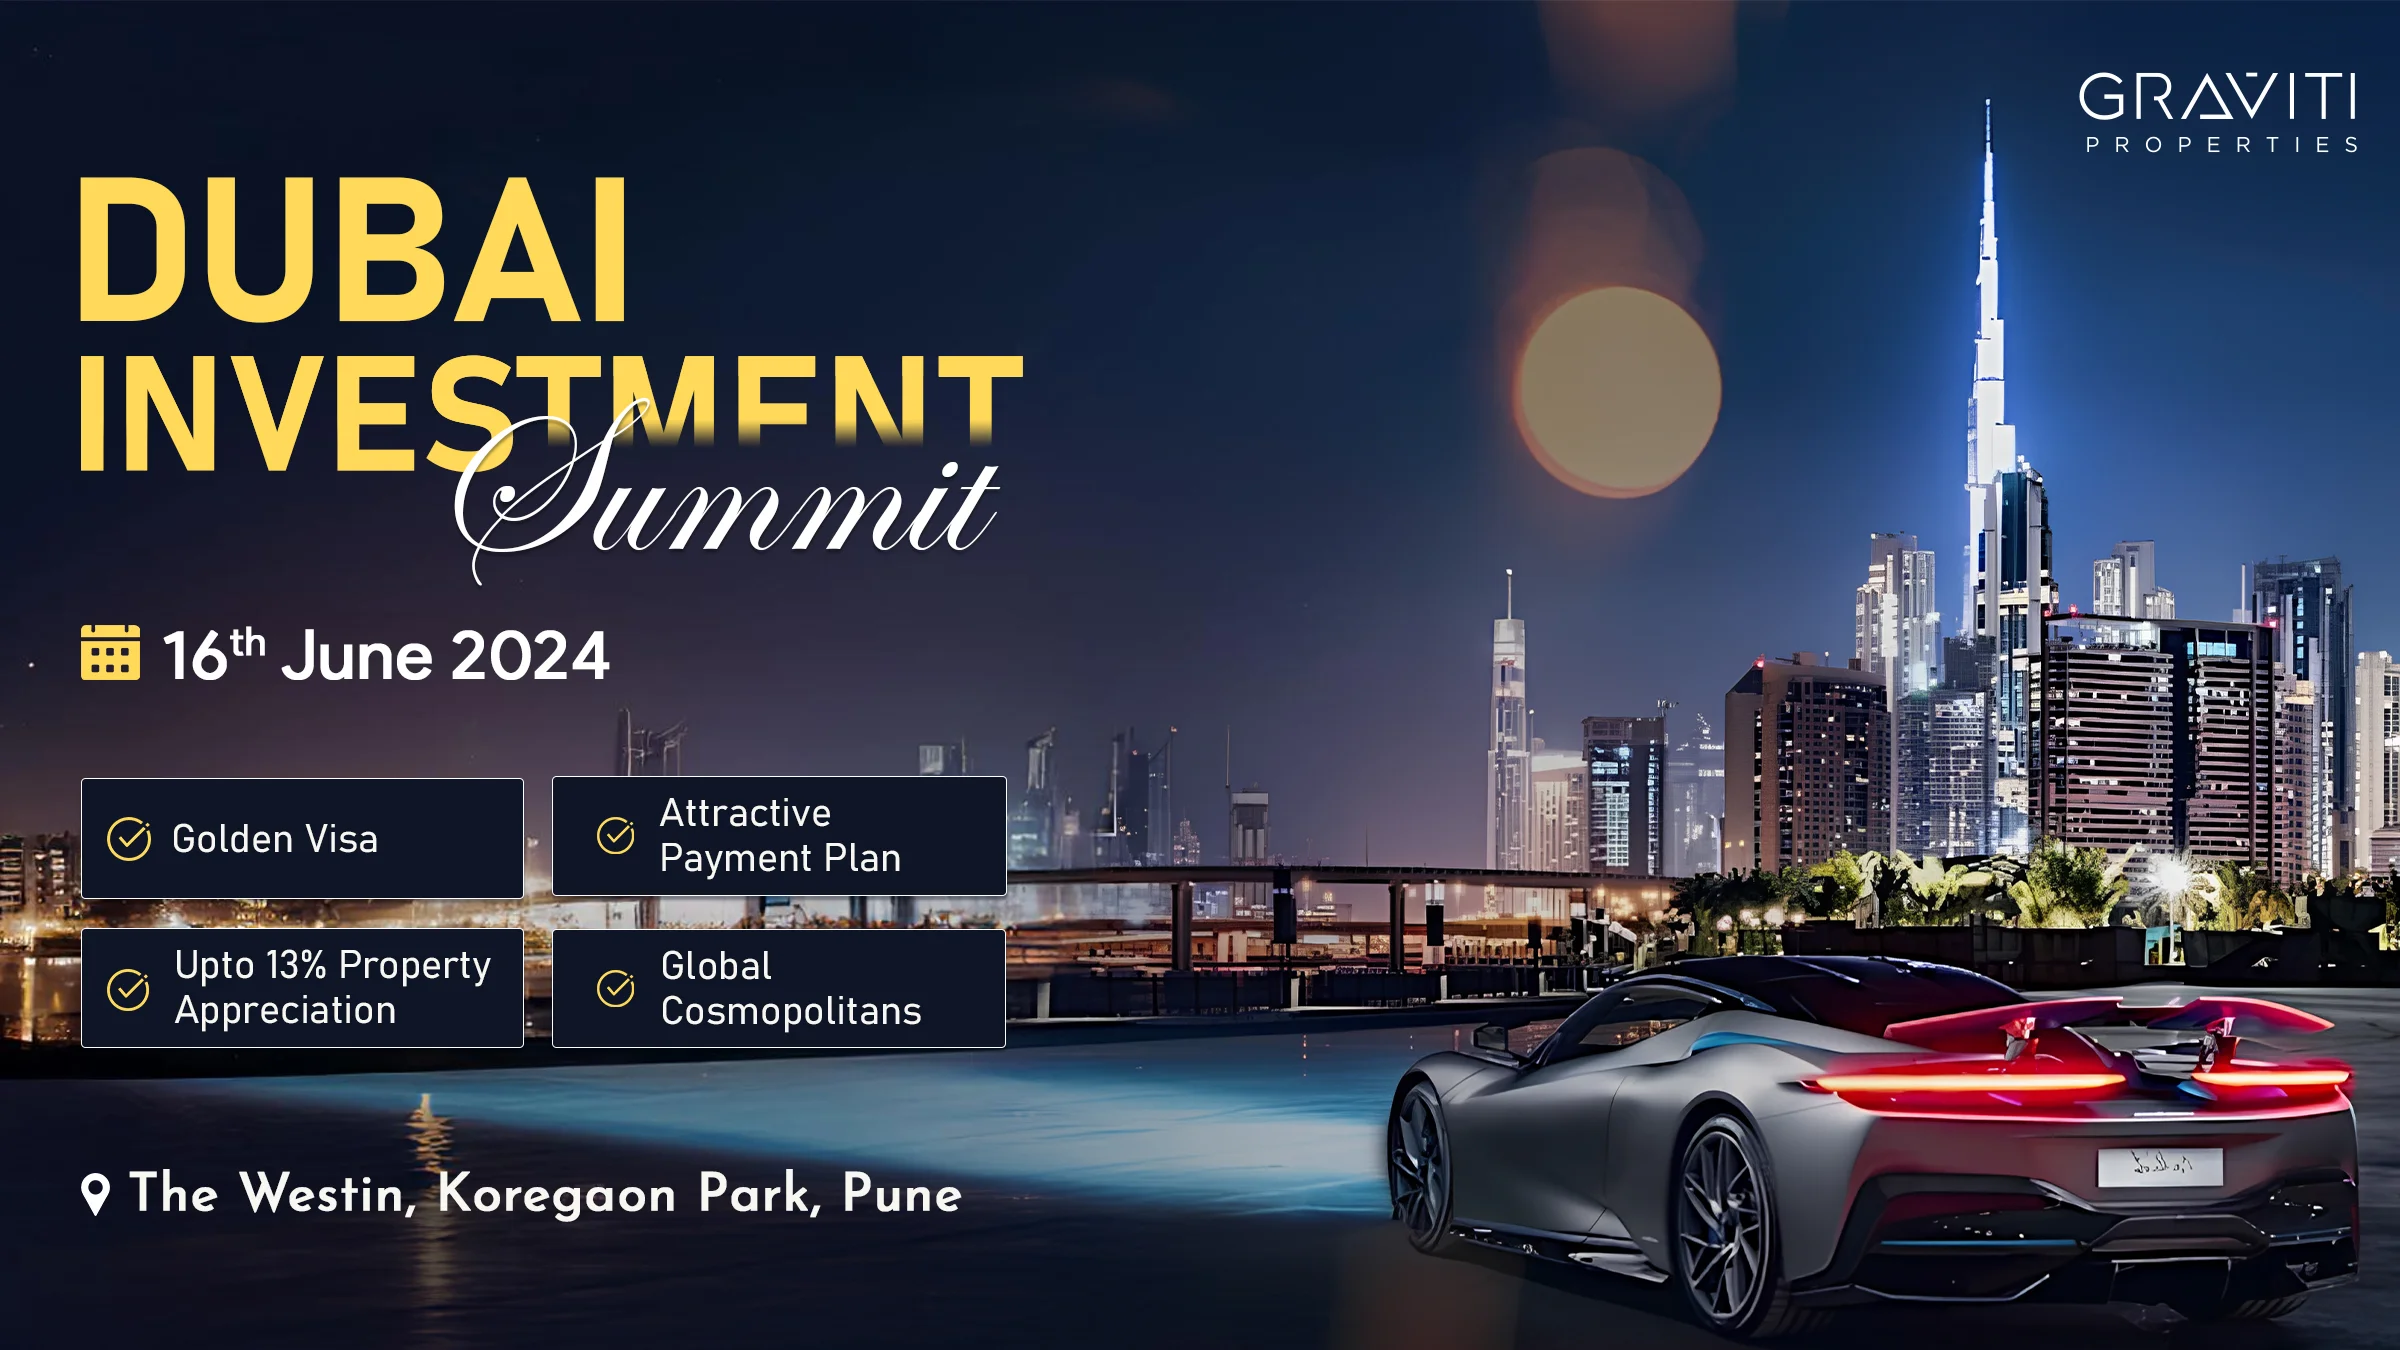 Premium Investment Opportunities at the Dubai Summit in Pune